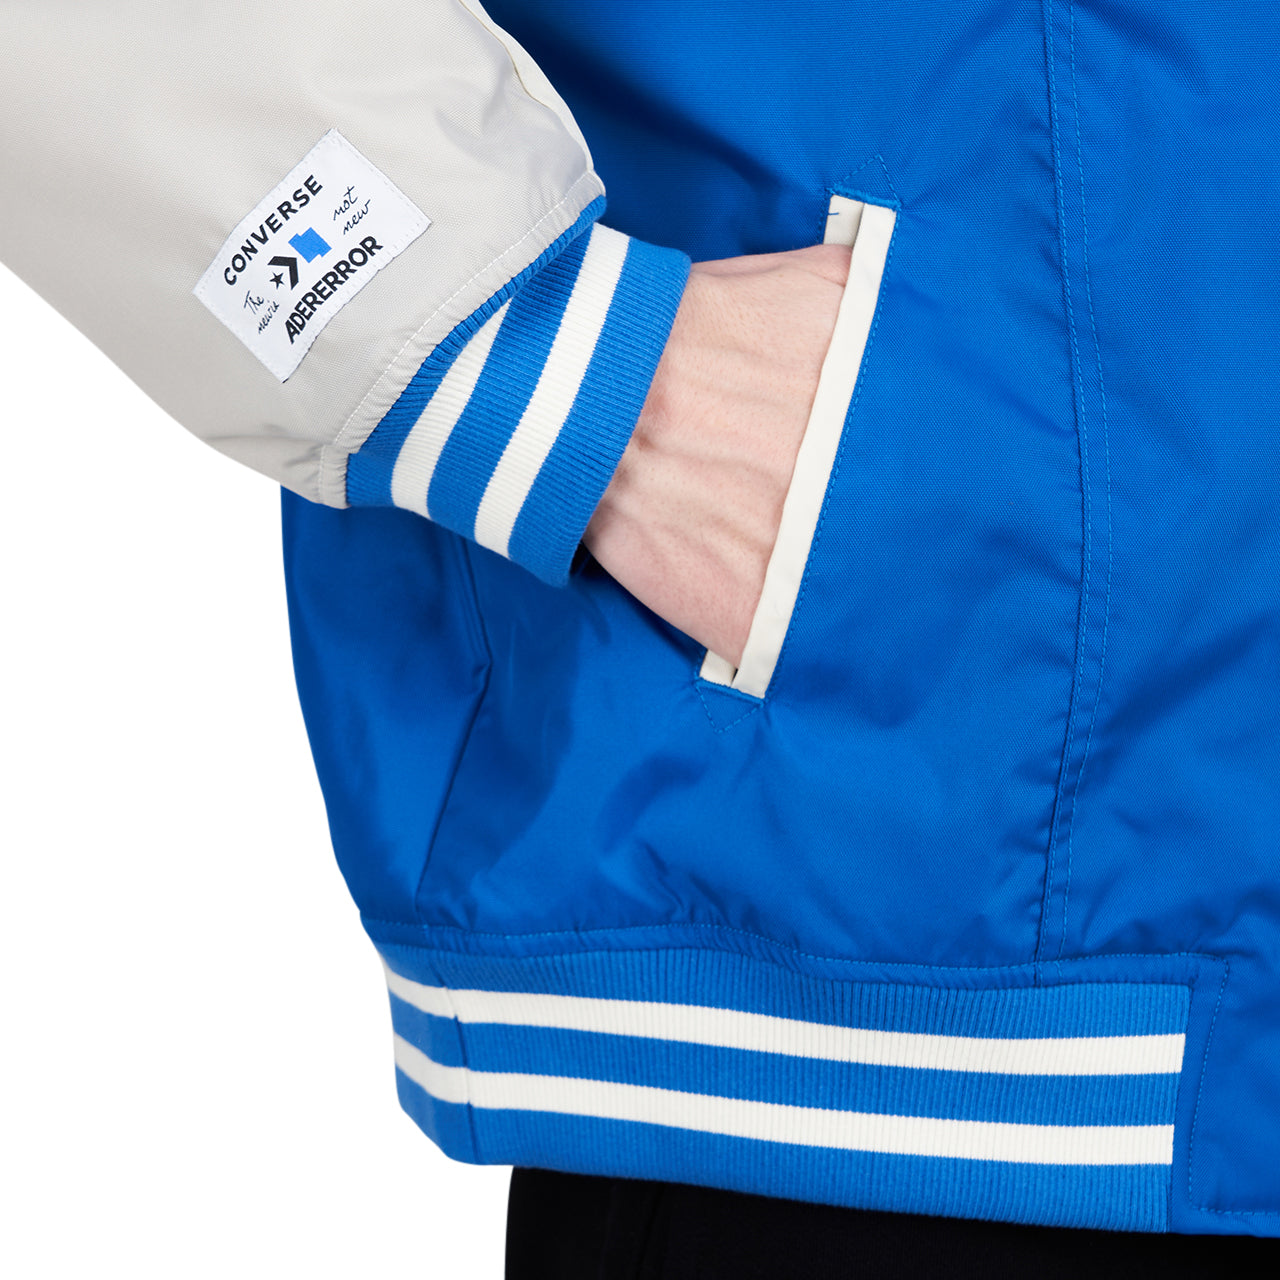 Converse x ADER ERROR Shapes Varsity Jacket (Blau / Creme)  - Allike Store